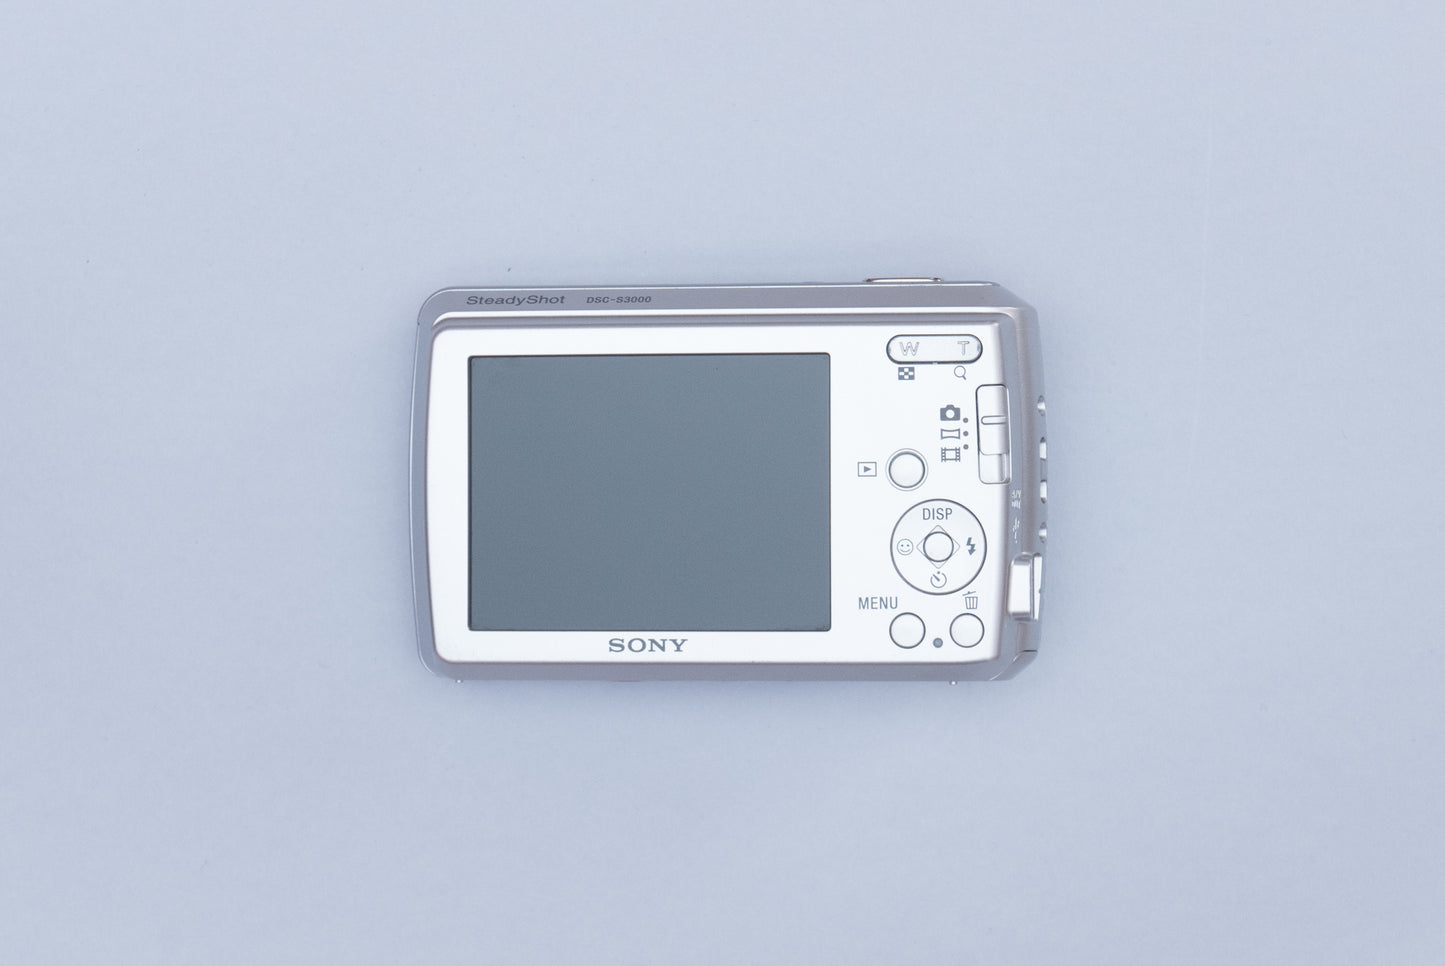 Sony Cyber-Shot DSC-S3000 Compact Y2K Digital Camera